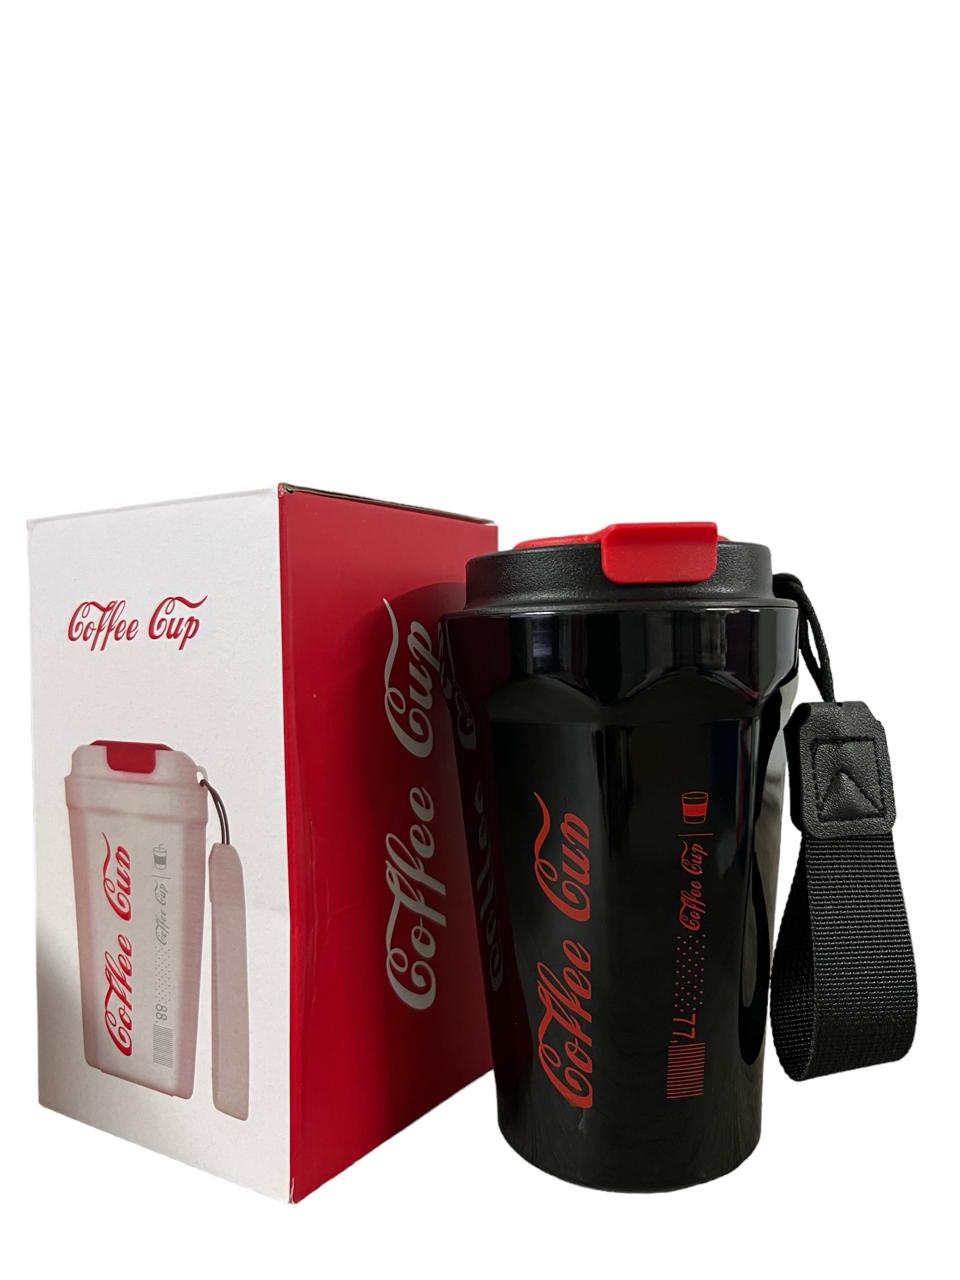 CDMX - Termo Digital Coca Cola